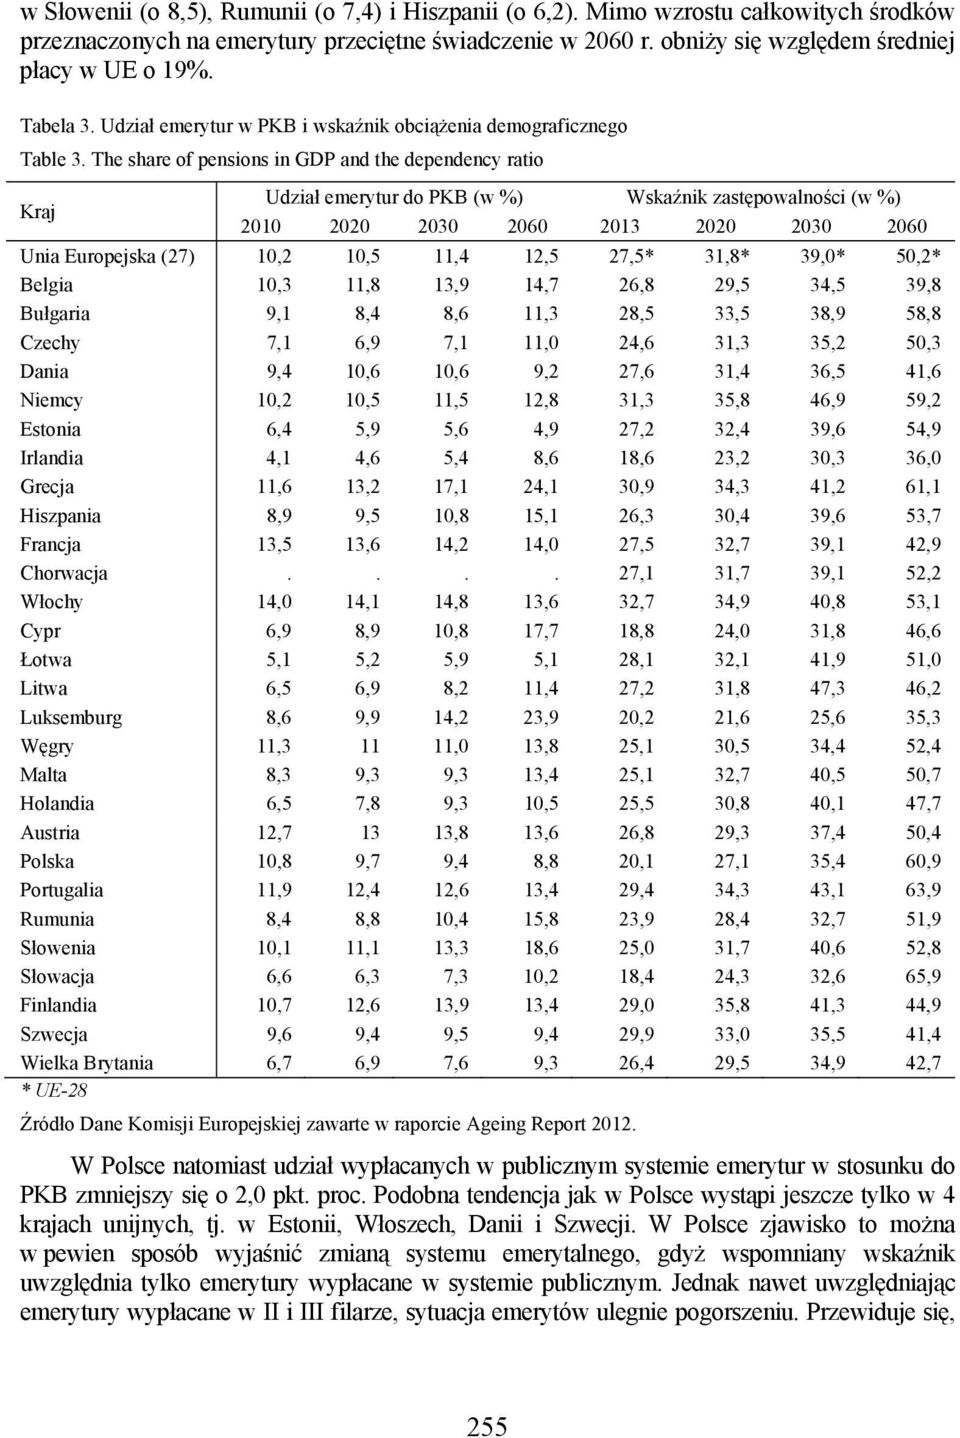 The share of pensions in GDP and the dependency ratio Kraj Udział emerytur do PKB (w %) Wskaźnik zastępowalności (w %) 2010 2020 2030 2060 2013 2020 2030 2060 Unia Europejska (27) 10,2 10,5 11,4 12,5